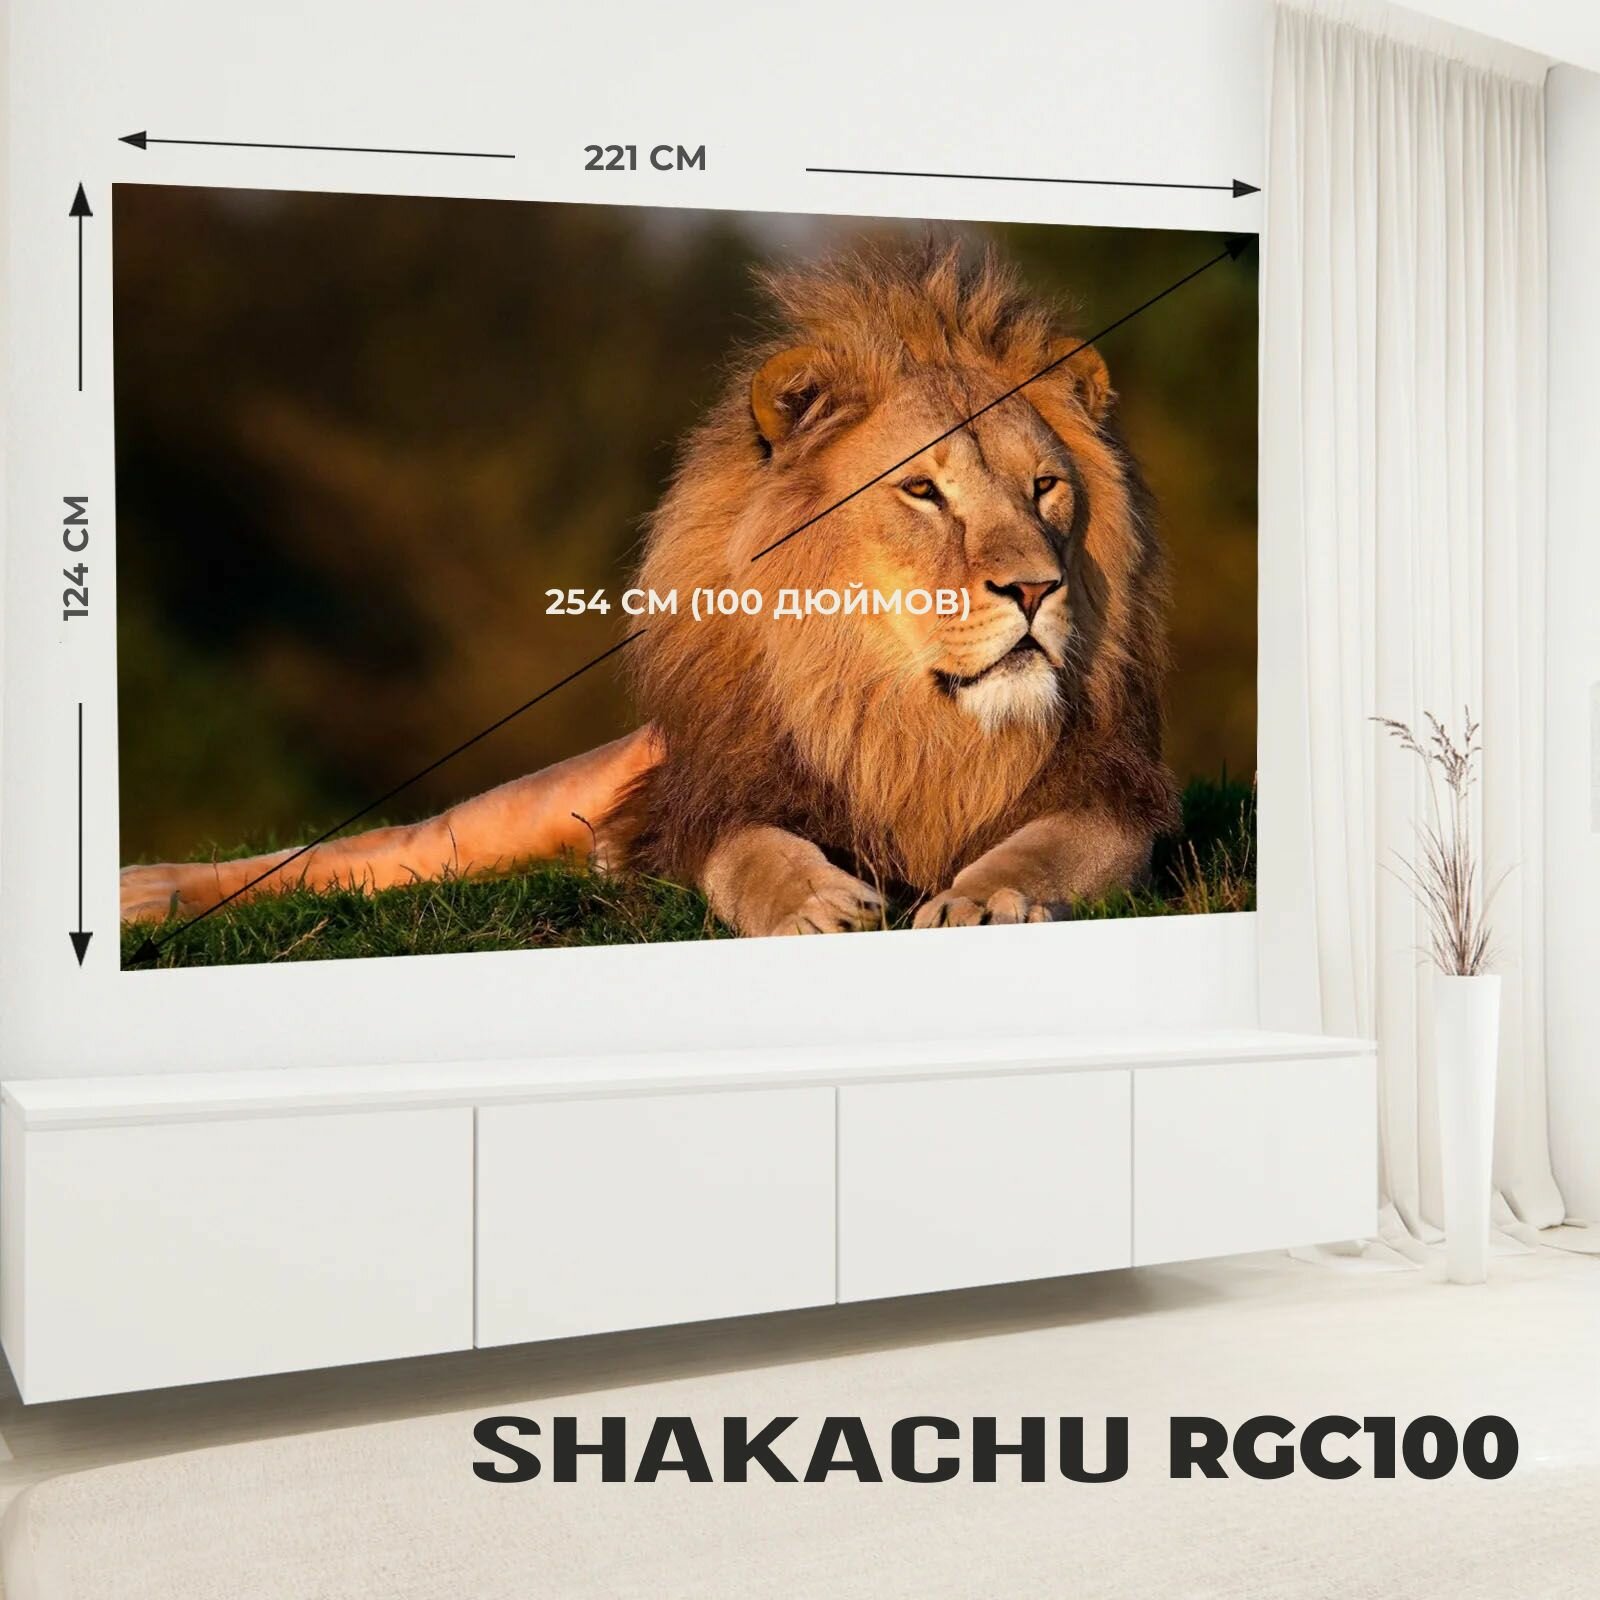 Экран для проектора Shakachu RGC100 светоотражающий в рулоне 100 дюймов серый полотно для проектора 16:9 (221х124 см)